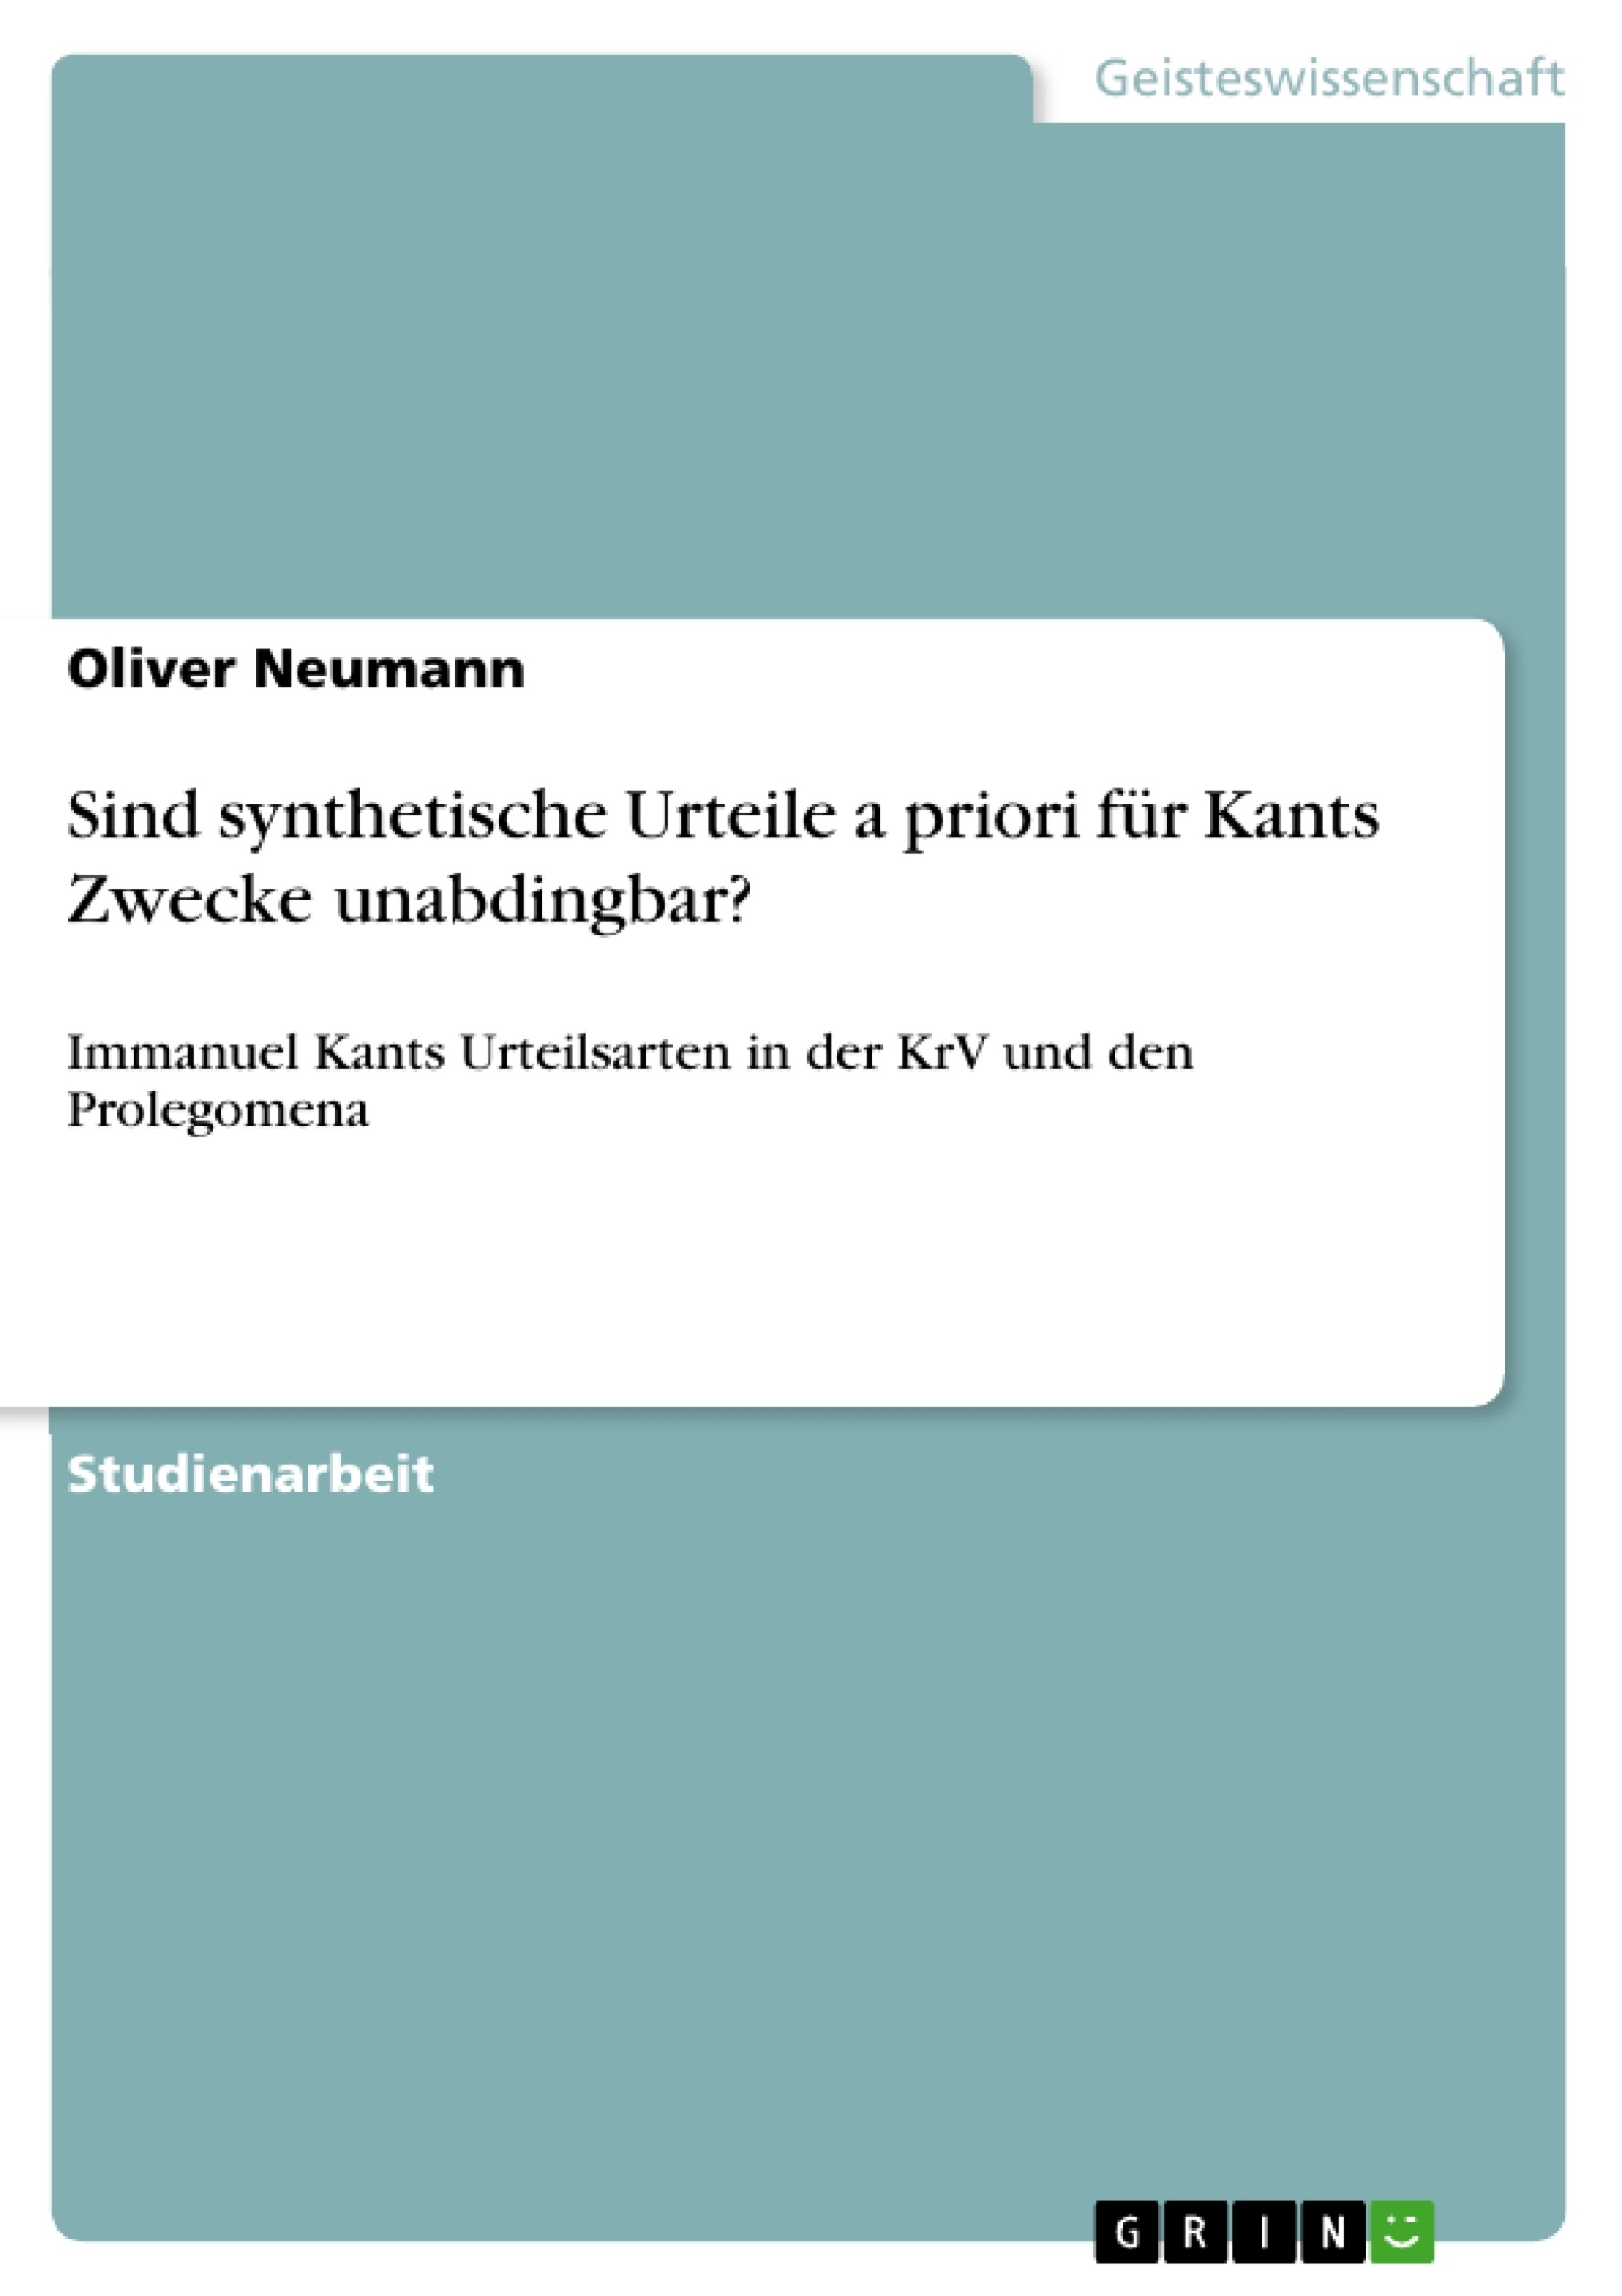 Título: Sind synthetische Urteile a priori für Kants Zwecke unabdingbar?